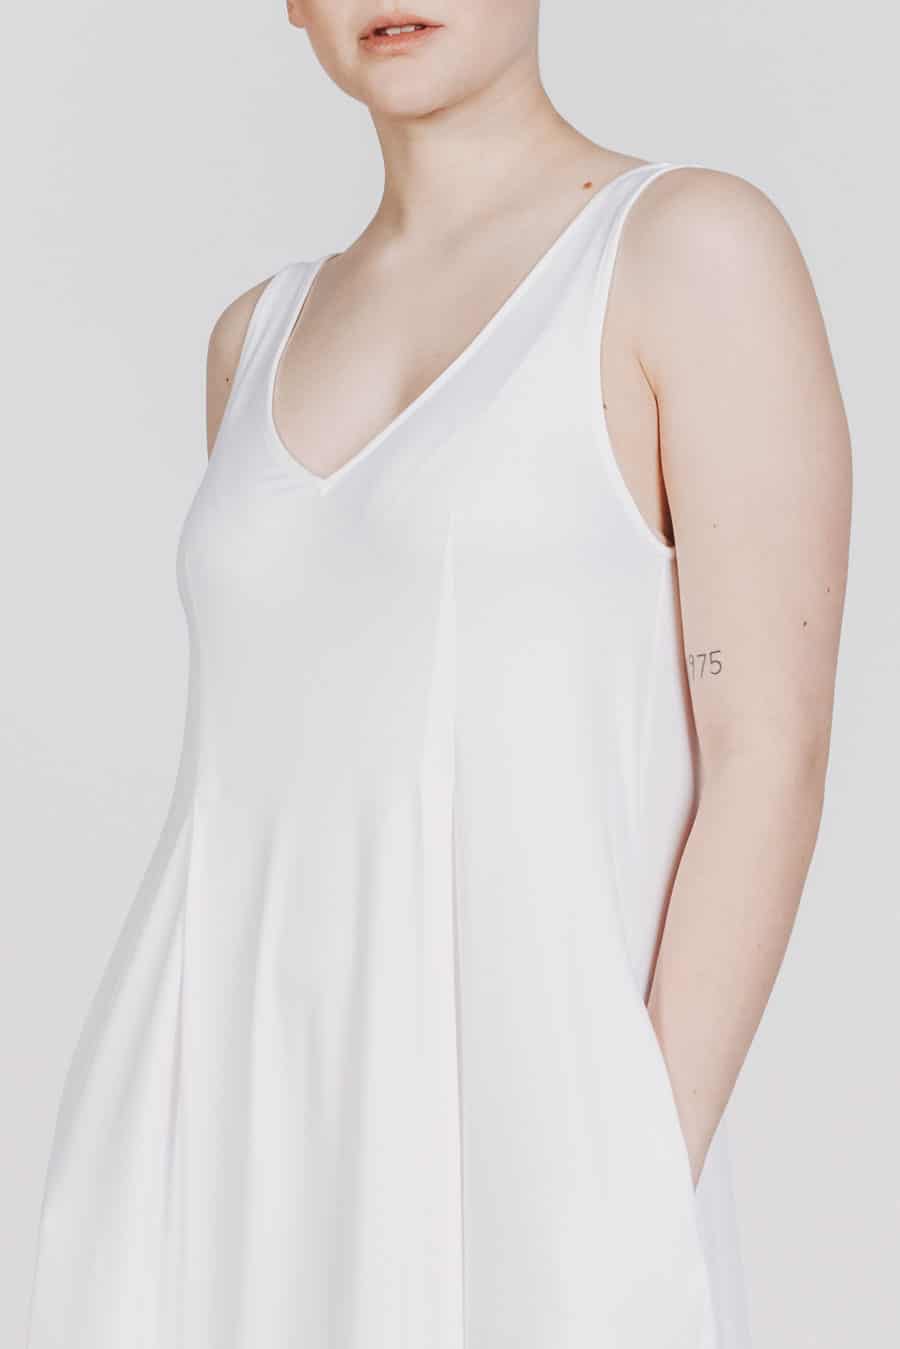 Deep White Black Modell SASHA langes Kleid weiß, ärmelloses Sommerkleid mit V-Ausschnitt, Schriftzug 1001 Deep White, Ansicht Detail Ausschnitt von vorne